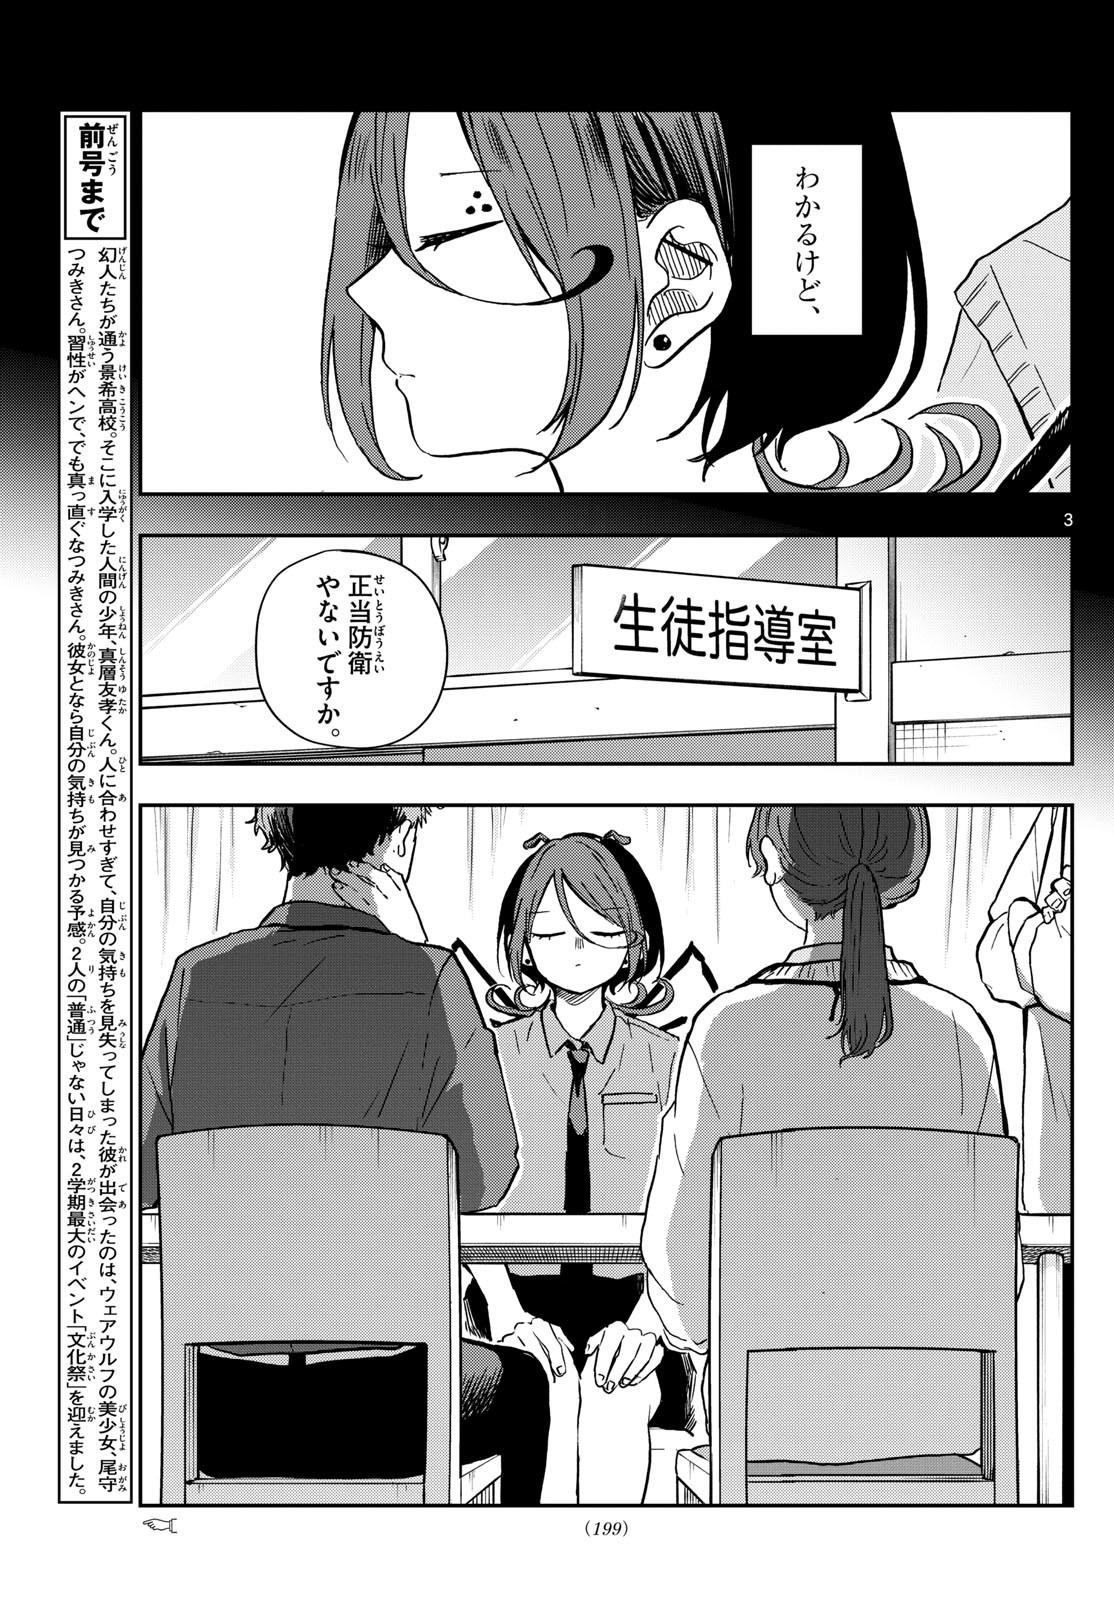 Omori Tsumiki to Kinichijou. - Chapter 31 - Page 3